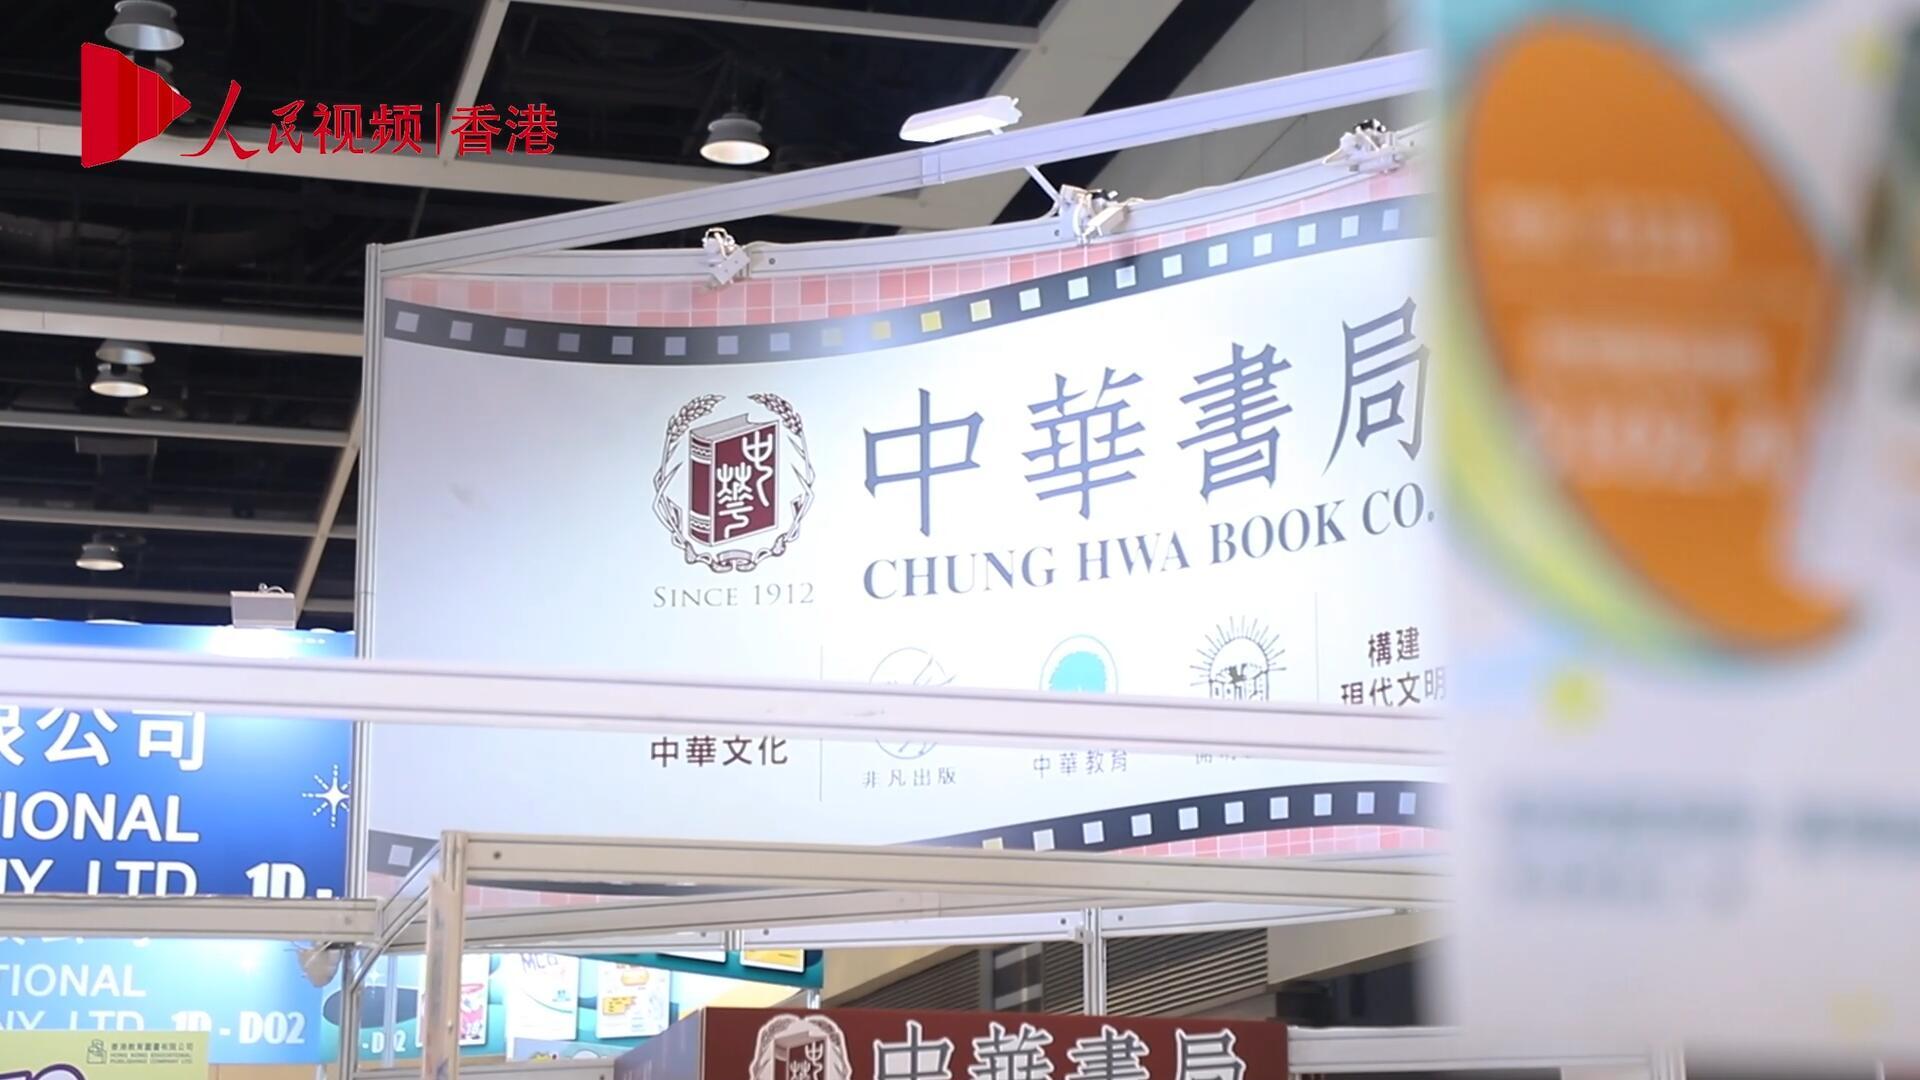 第34屆香港書展開幕 聚焦“影視文學”主題